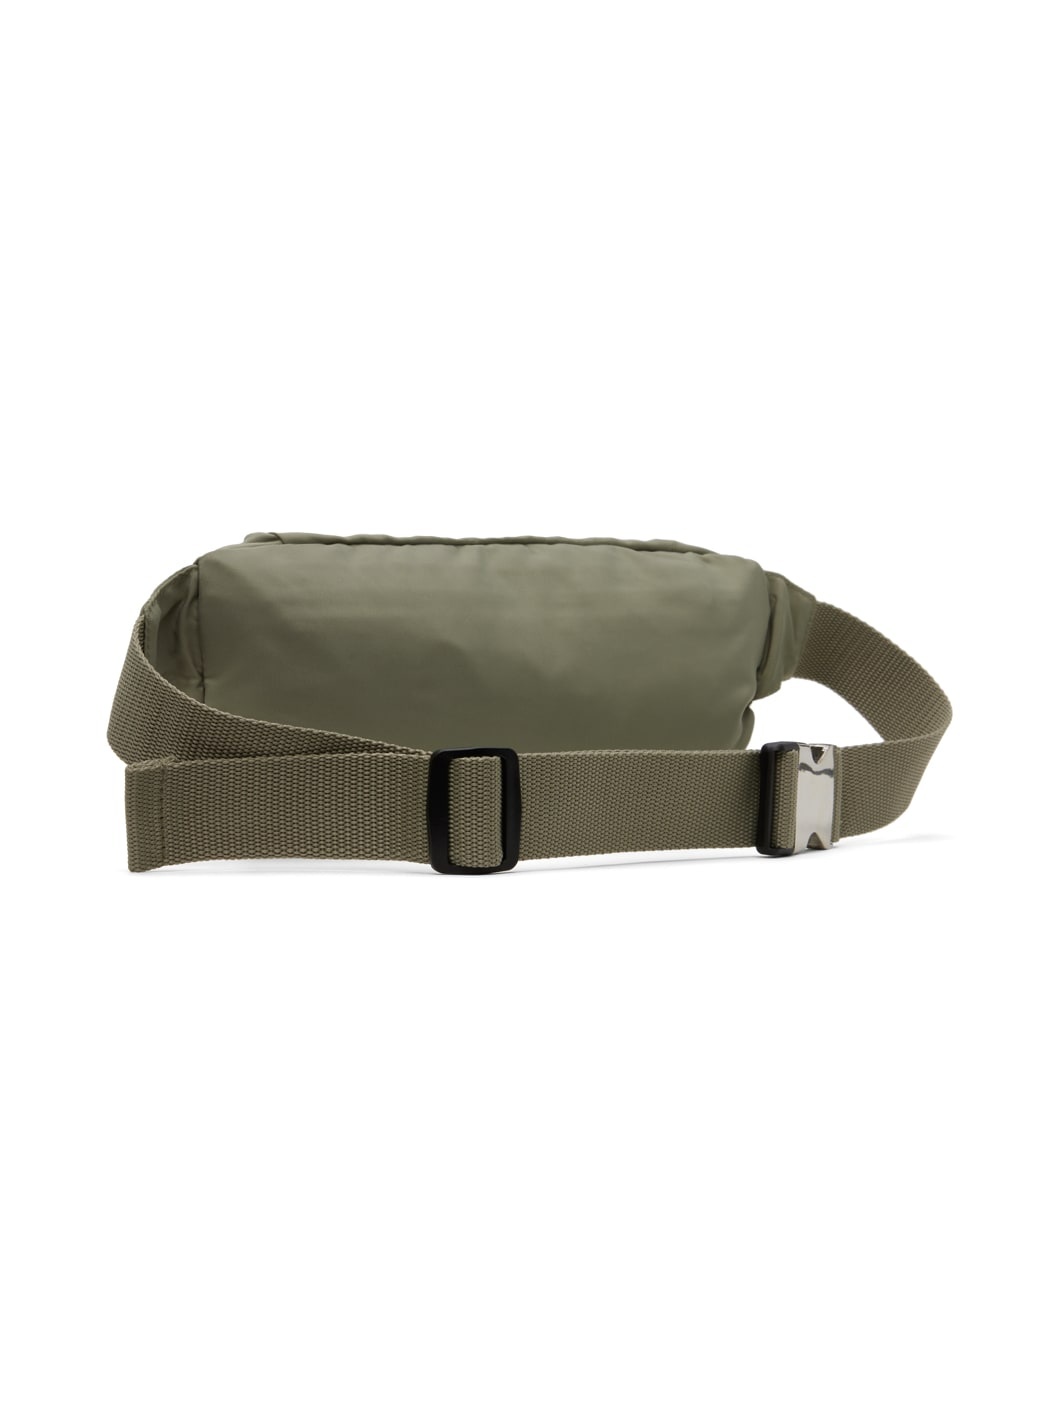 Khaki Tuesday Belt Bag - 3